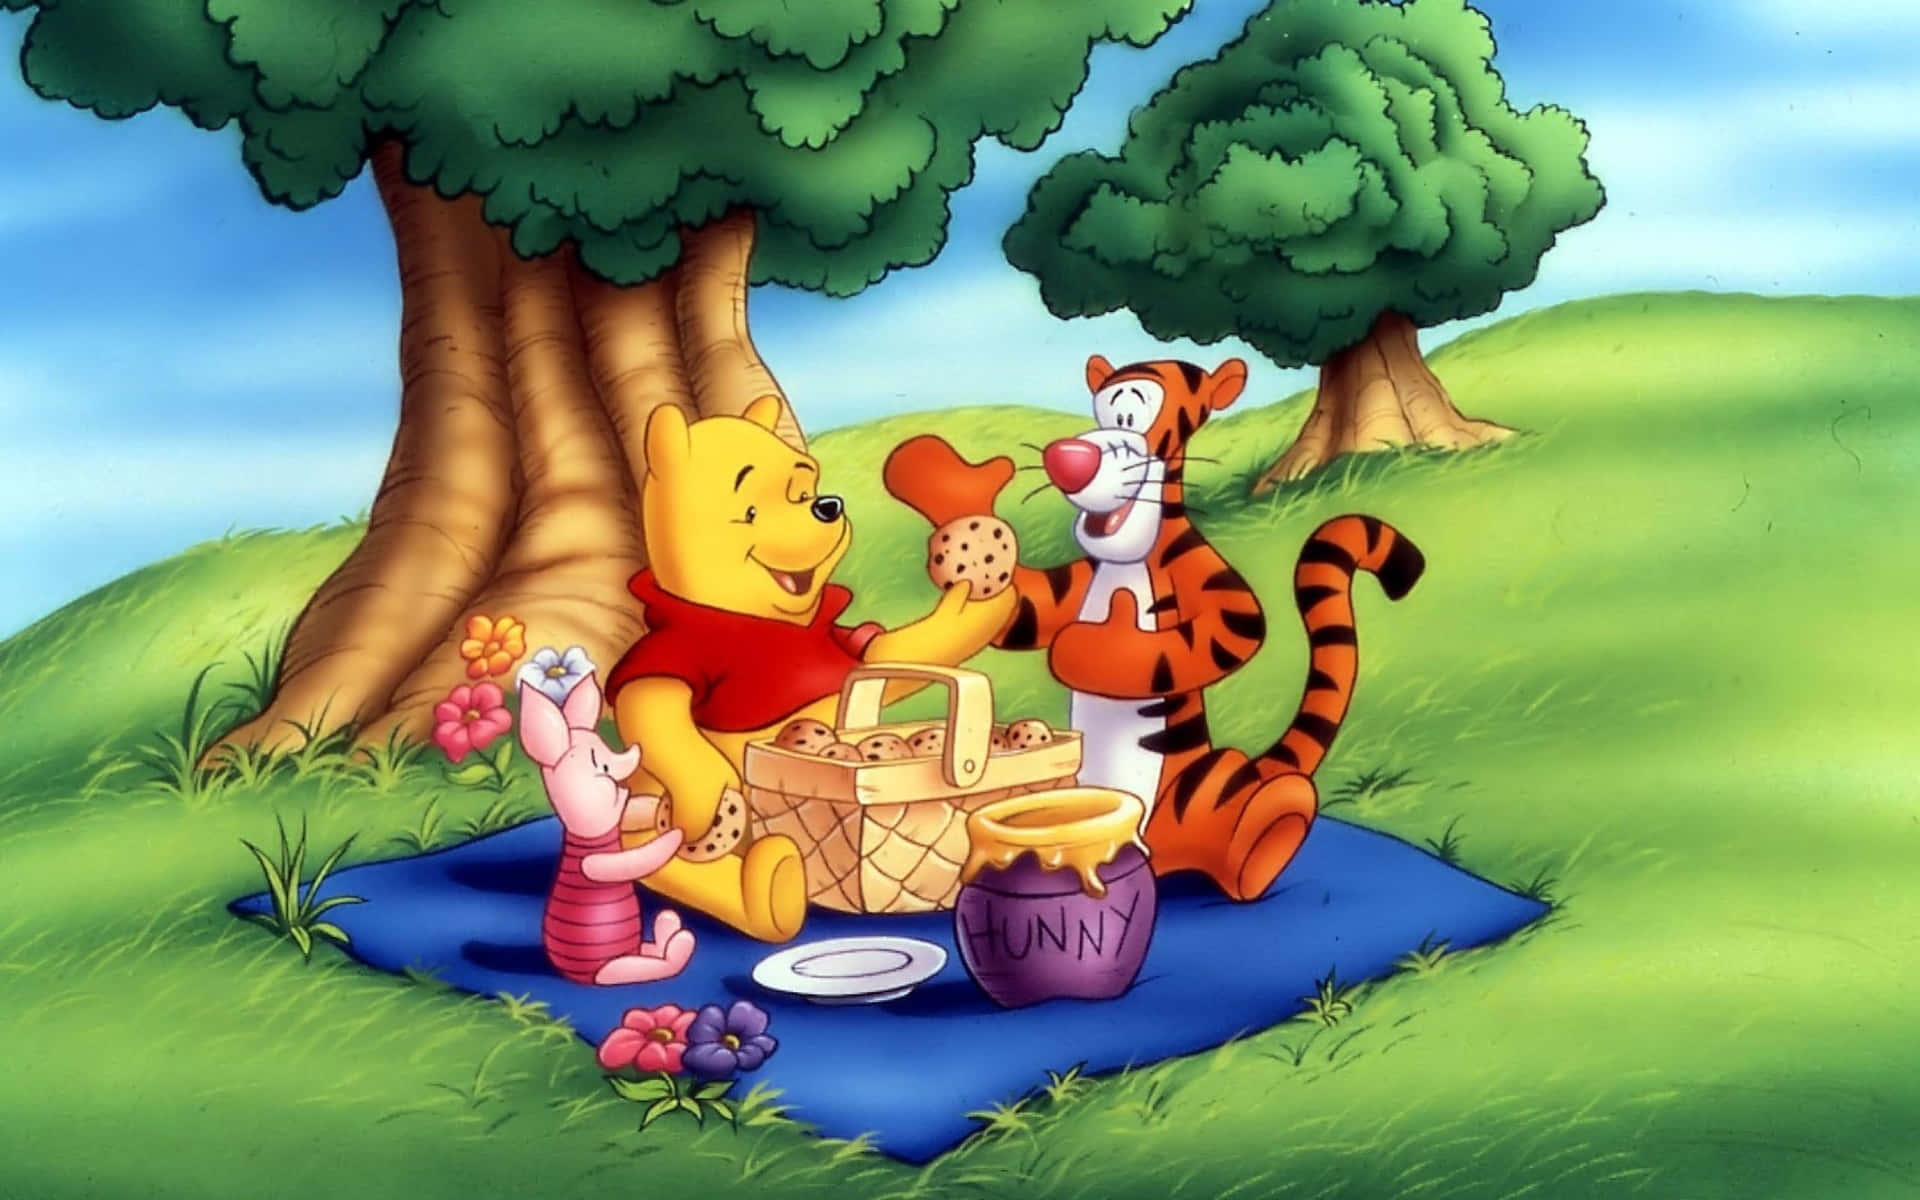 Unagiornata Allegre Con Winnie The Pooh